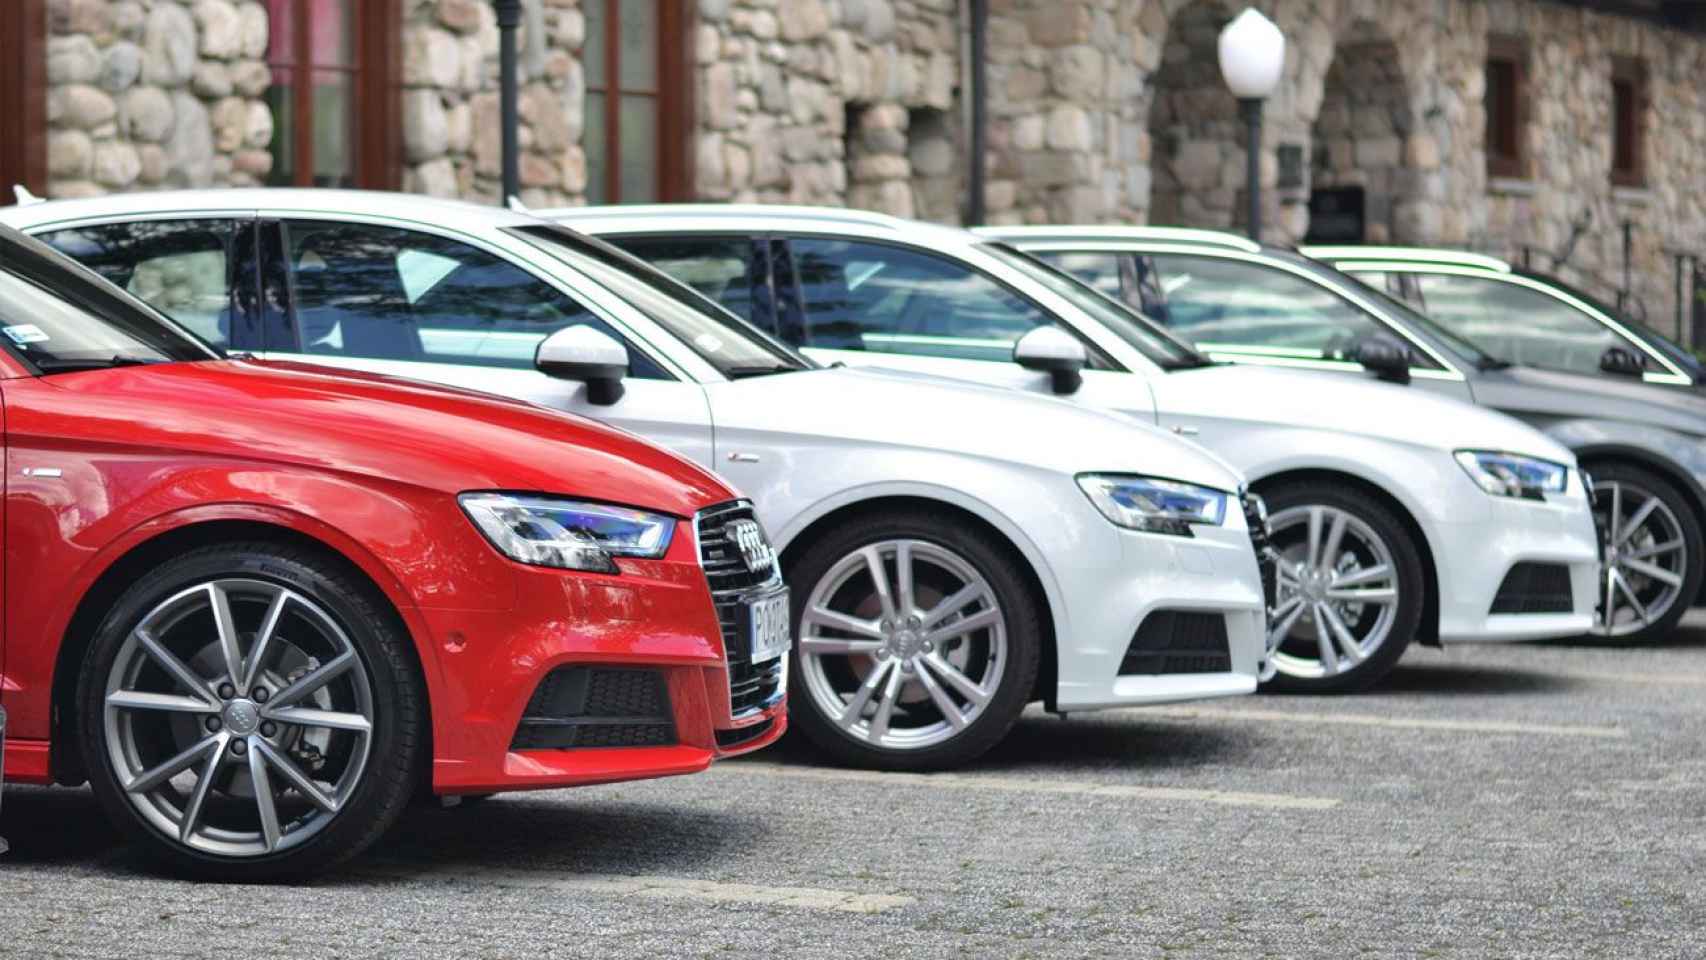 Conjunto de vehículos de la marca Audi aparcados en batería en la vía